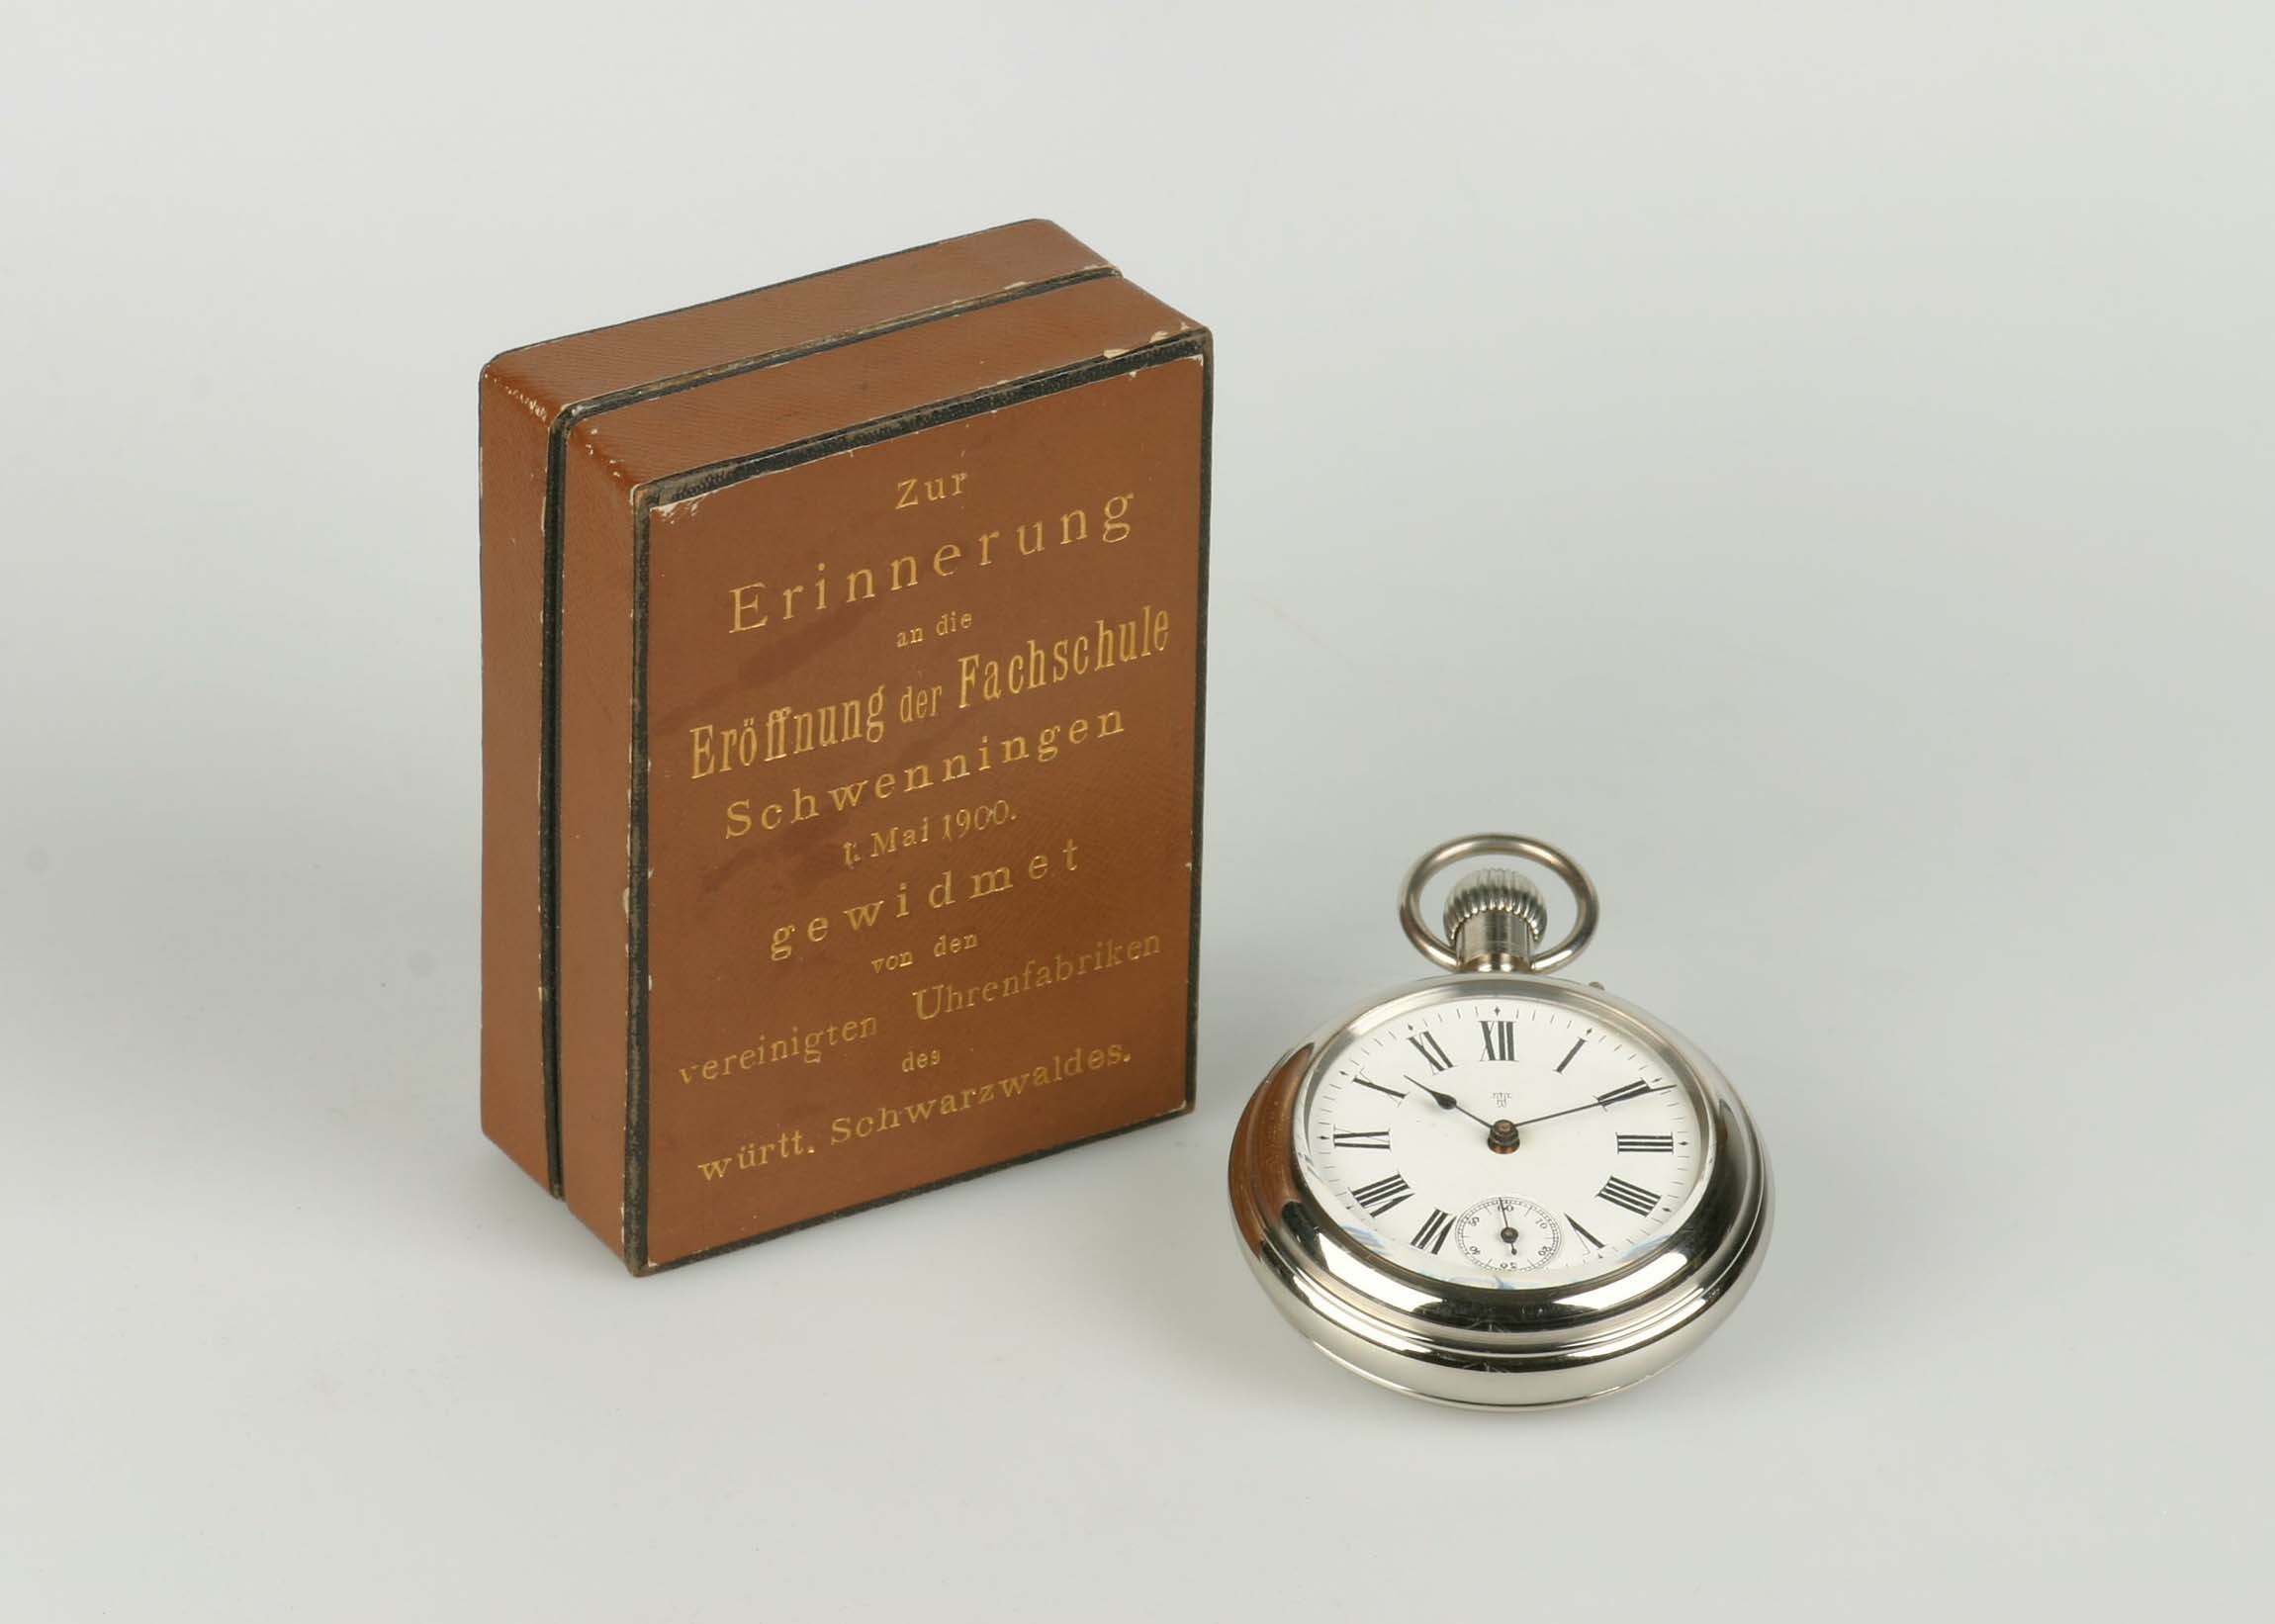 Taschenuhr "TH", Thomas Haller, Schwenningen, 1900 (Deutsches Uhrenmuseum CC BY-SA)